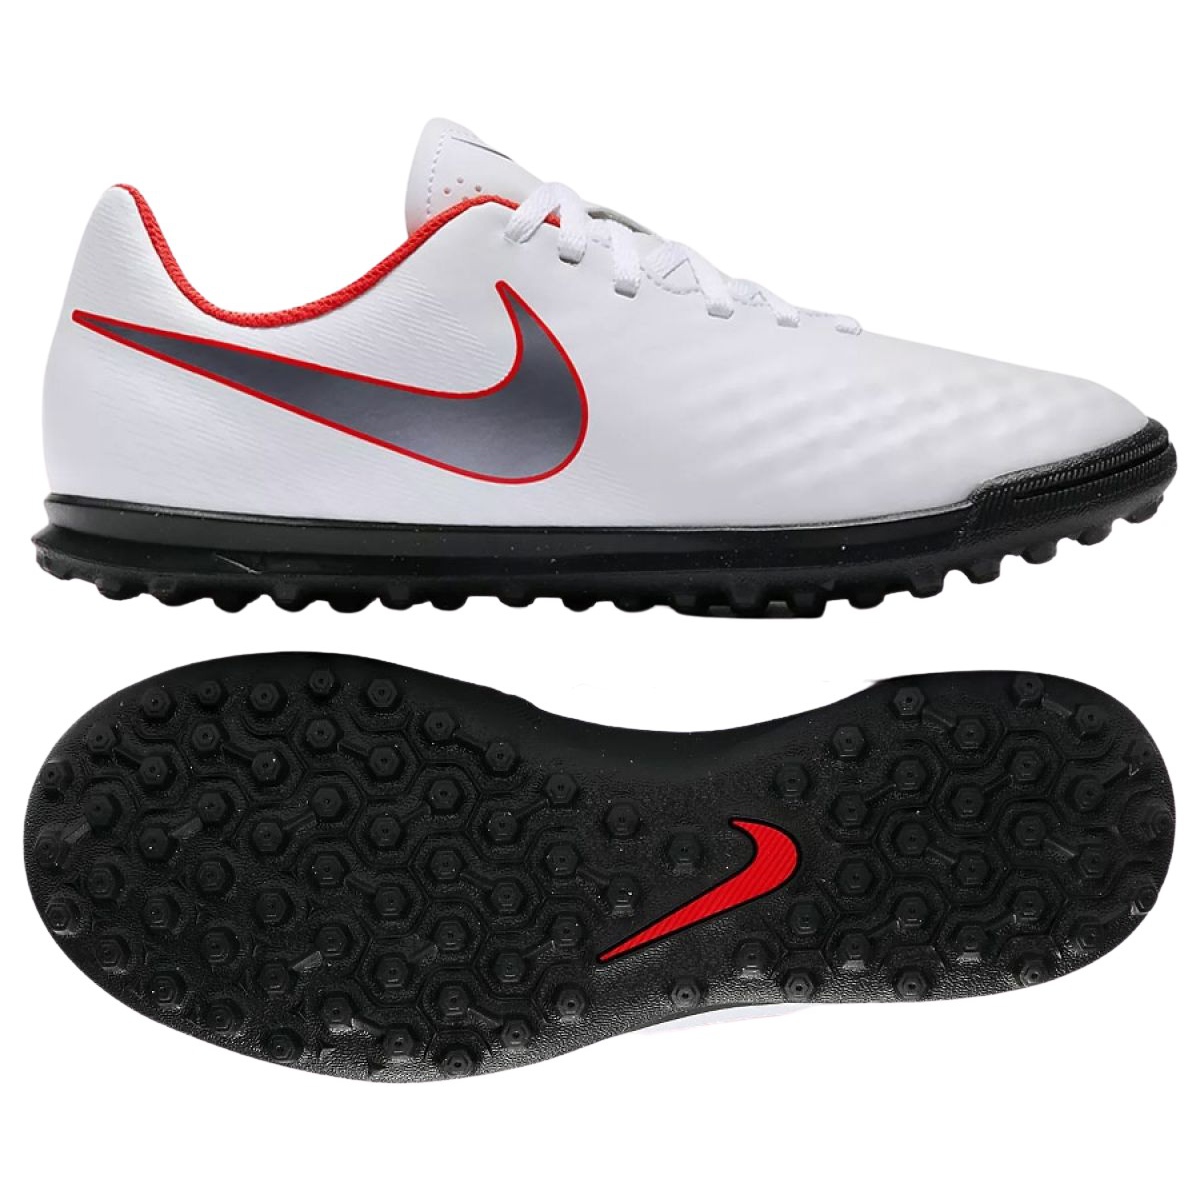 Nike ObraX 2 Club Tf Jr AH7317-107 football shoes multicolored white - KeeShoes